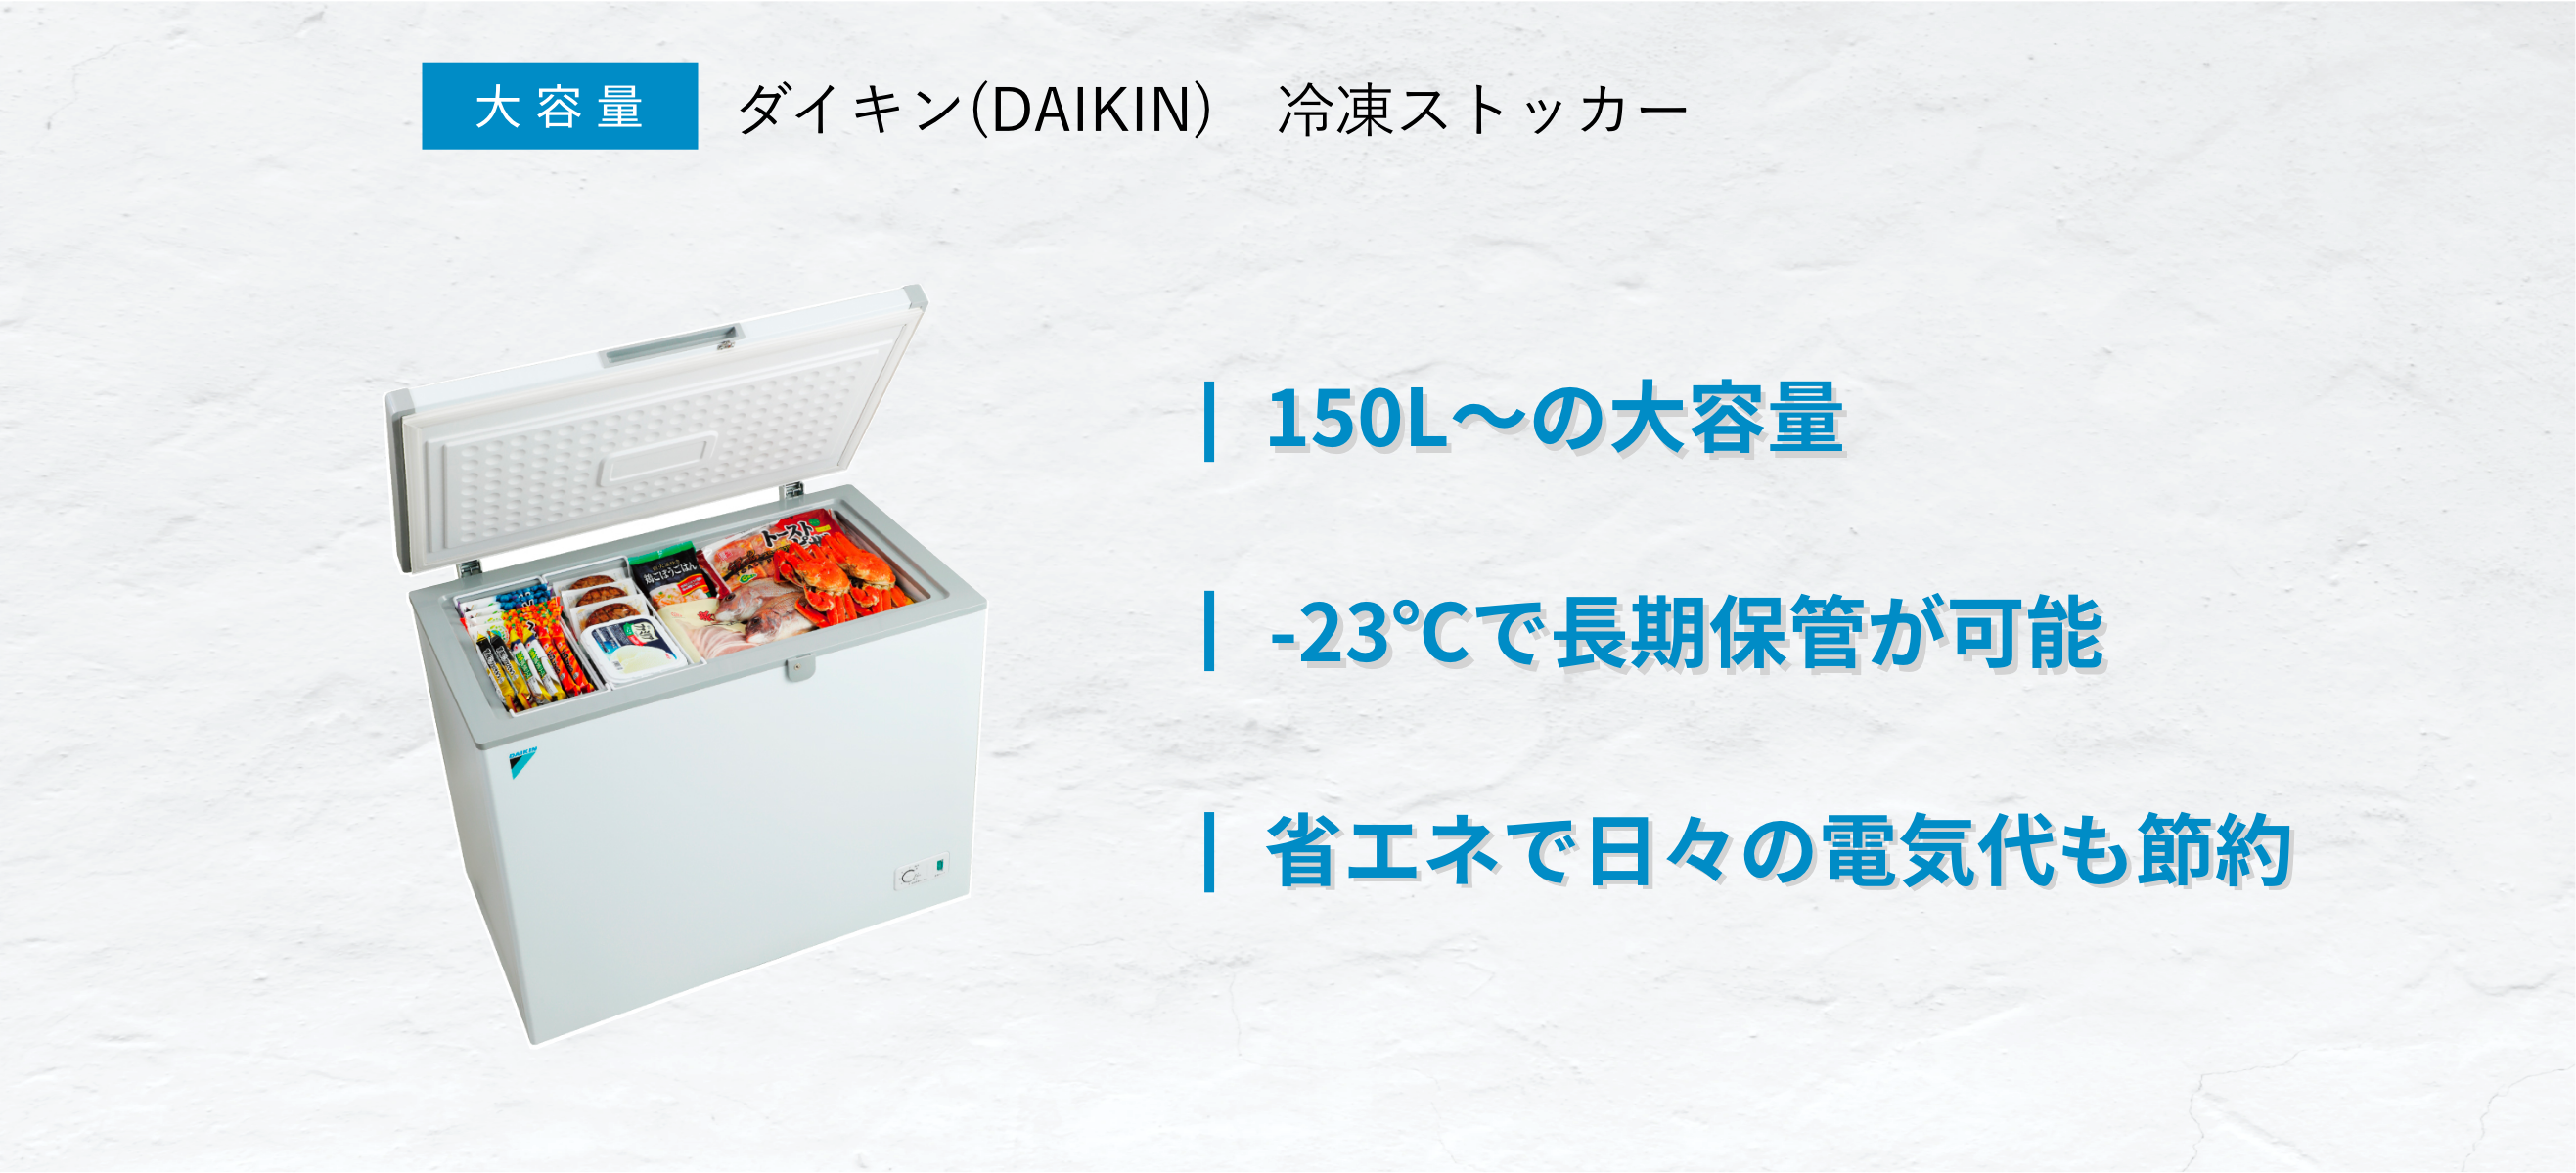 ダイキン 業務用 冷凍ストッカー LBFG6AS 横型 600Lクラス 上扉2ドア式 フリーザー 冷凍庫  - 1